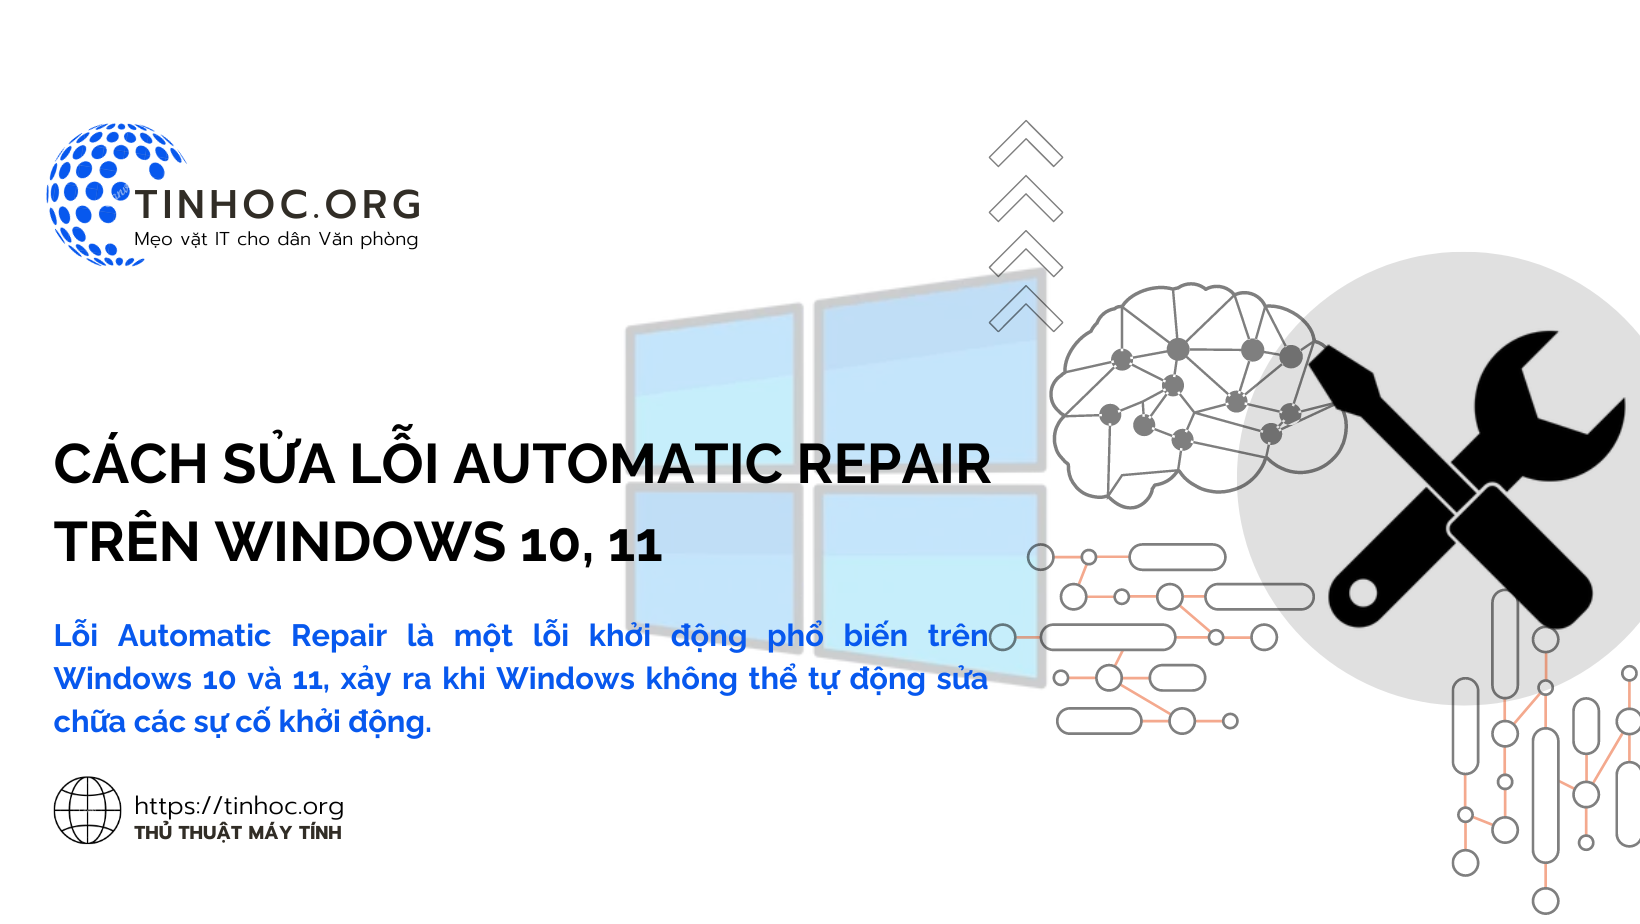 Cách sửa lỗi Automatic Repair trên Windows 10, 11